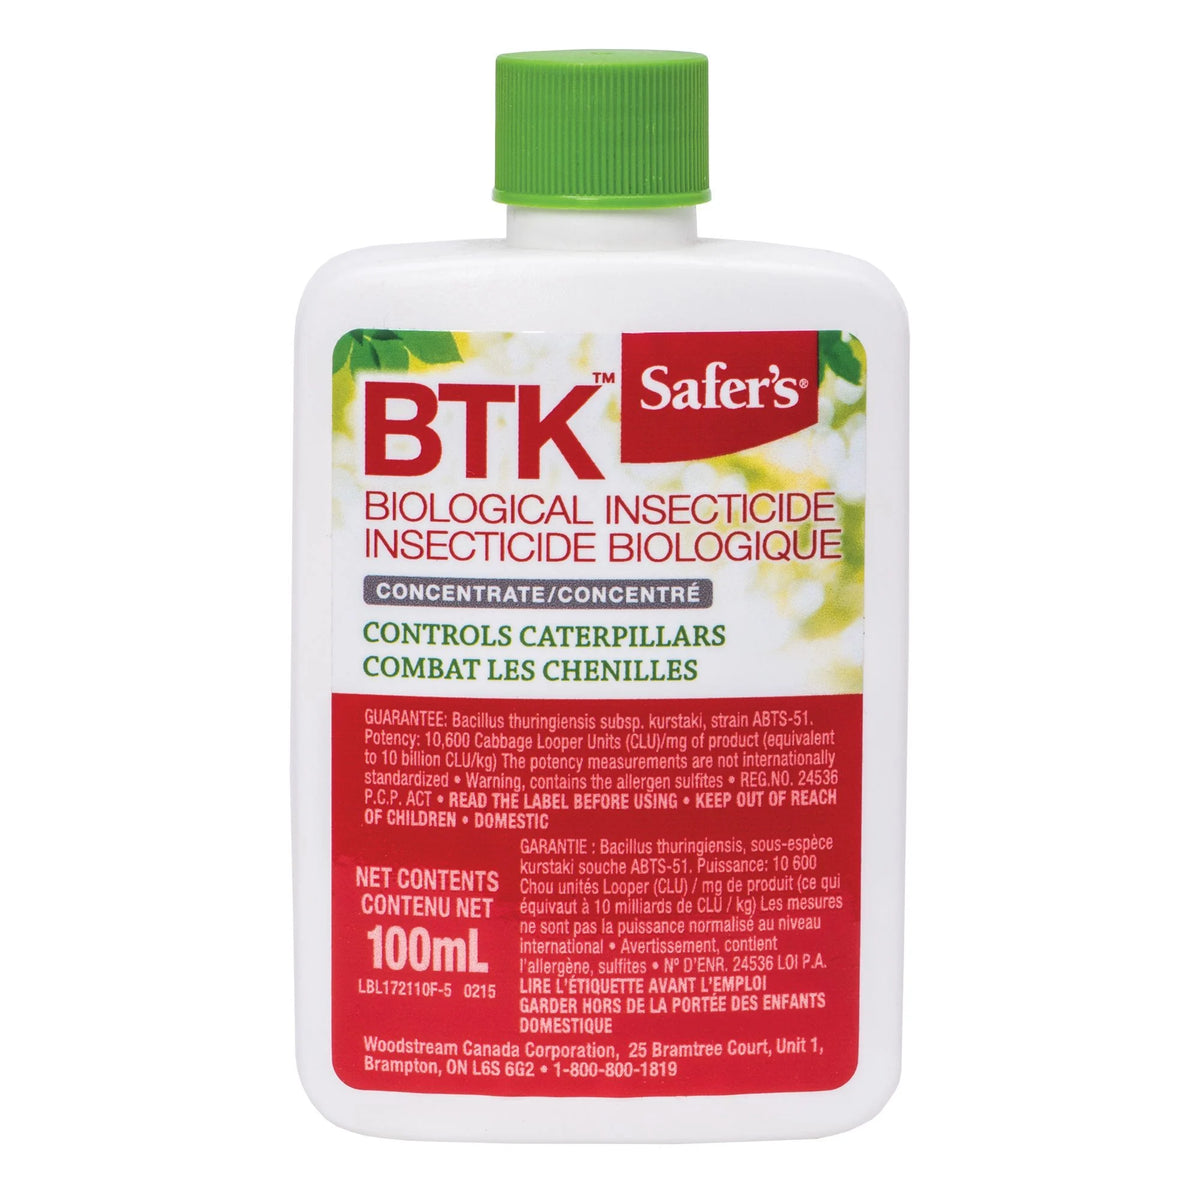 Insecticide biologique BTK - safers